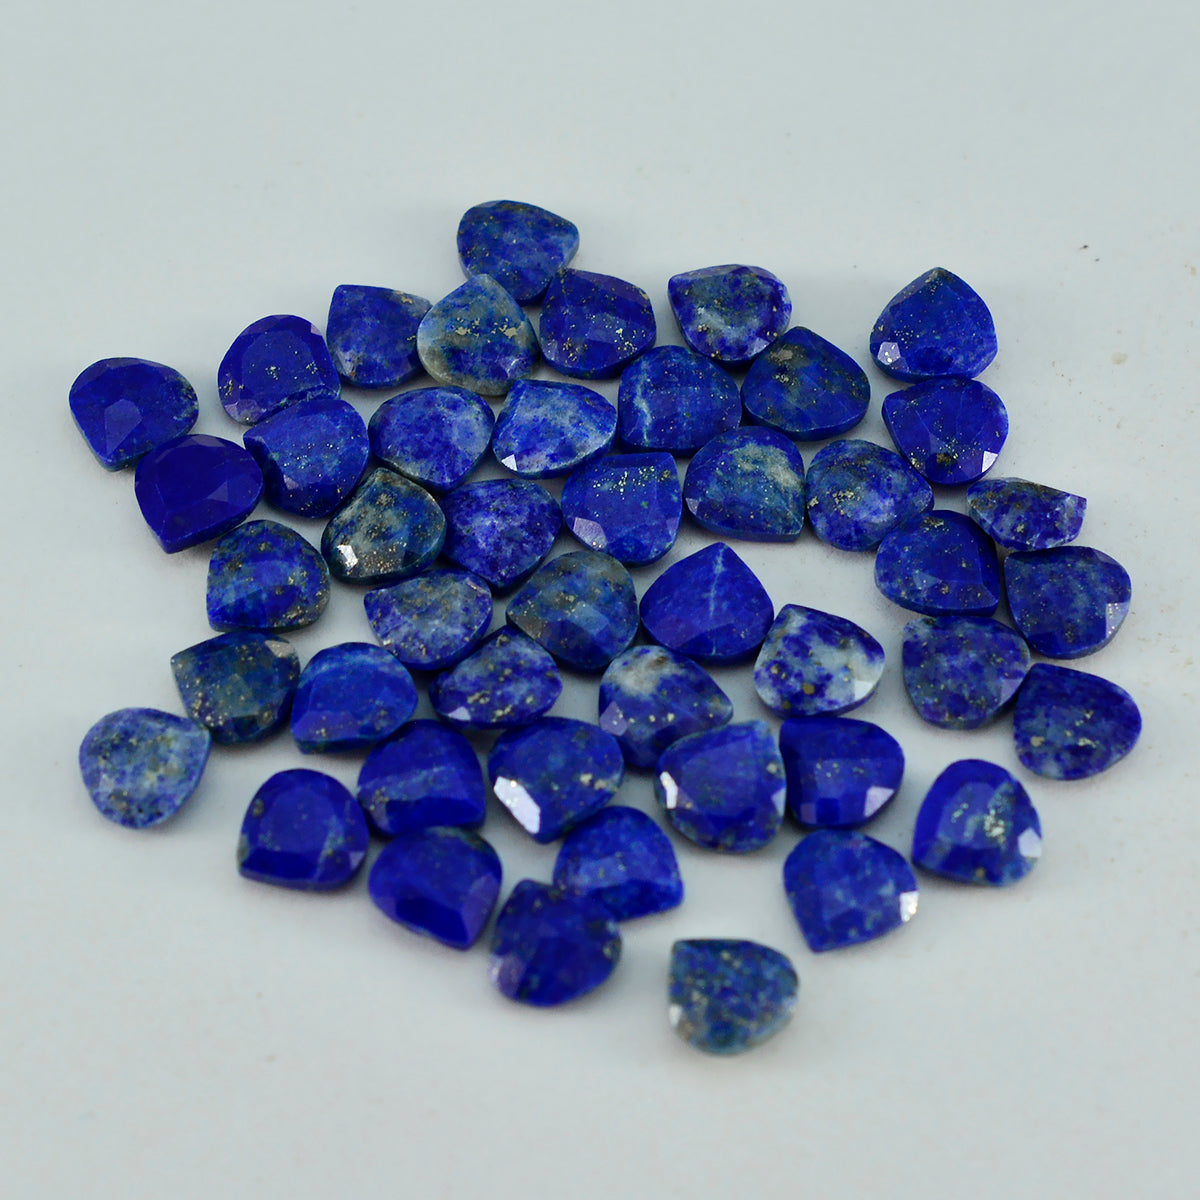 Riyogems 1PC Echte Blauwe Lapis Lazuli Facet 7x7 mm Hartvorm fantastische Kwaliteit Losse Edelstenen